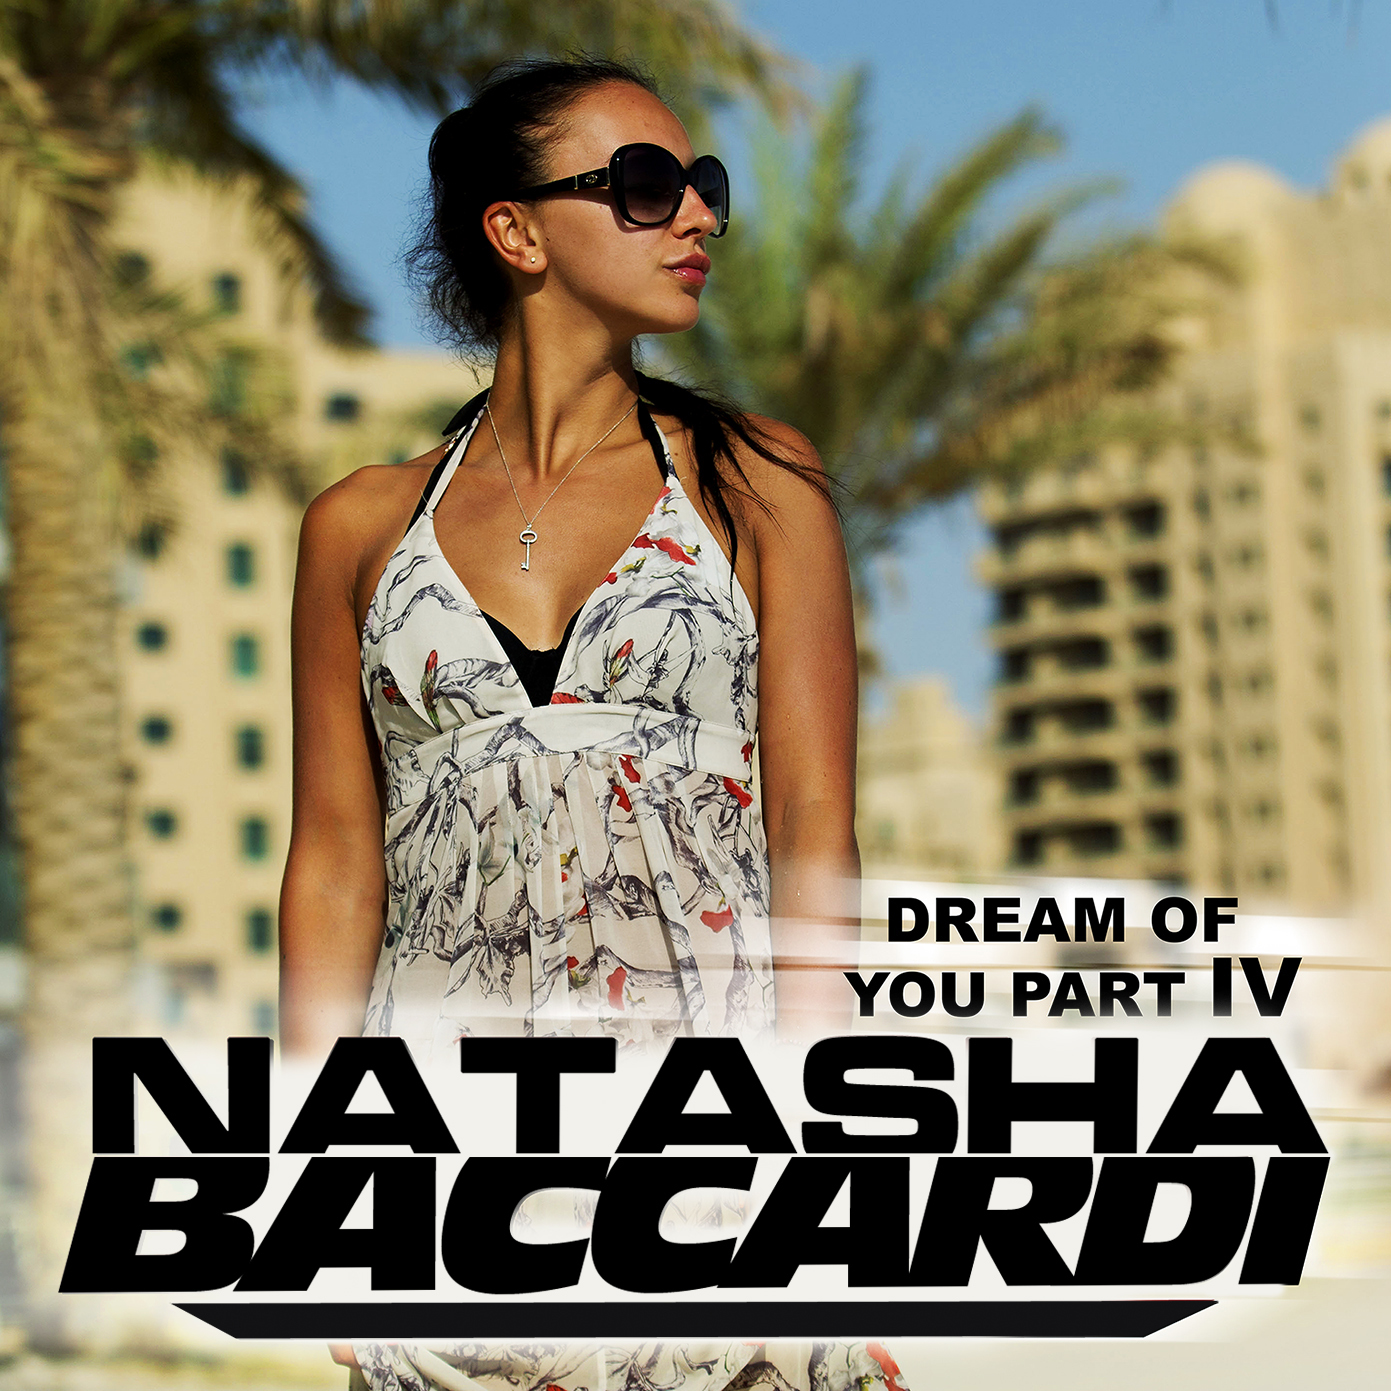 Natasha dreams